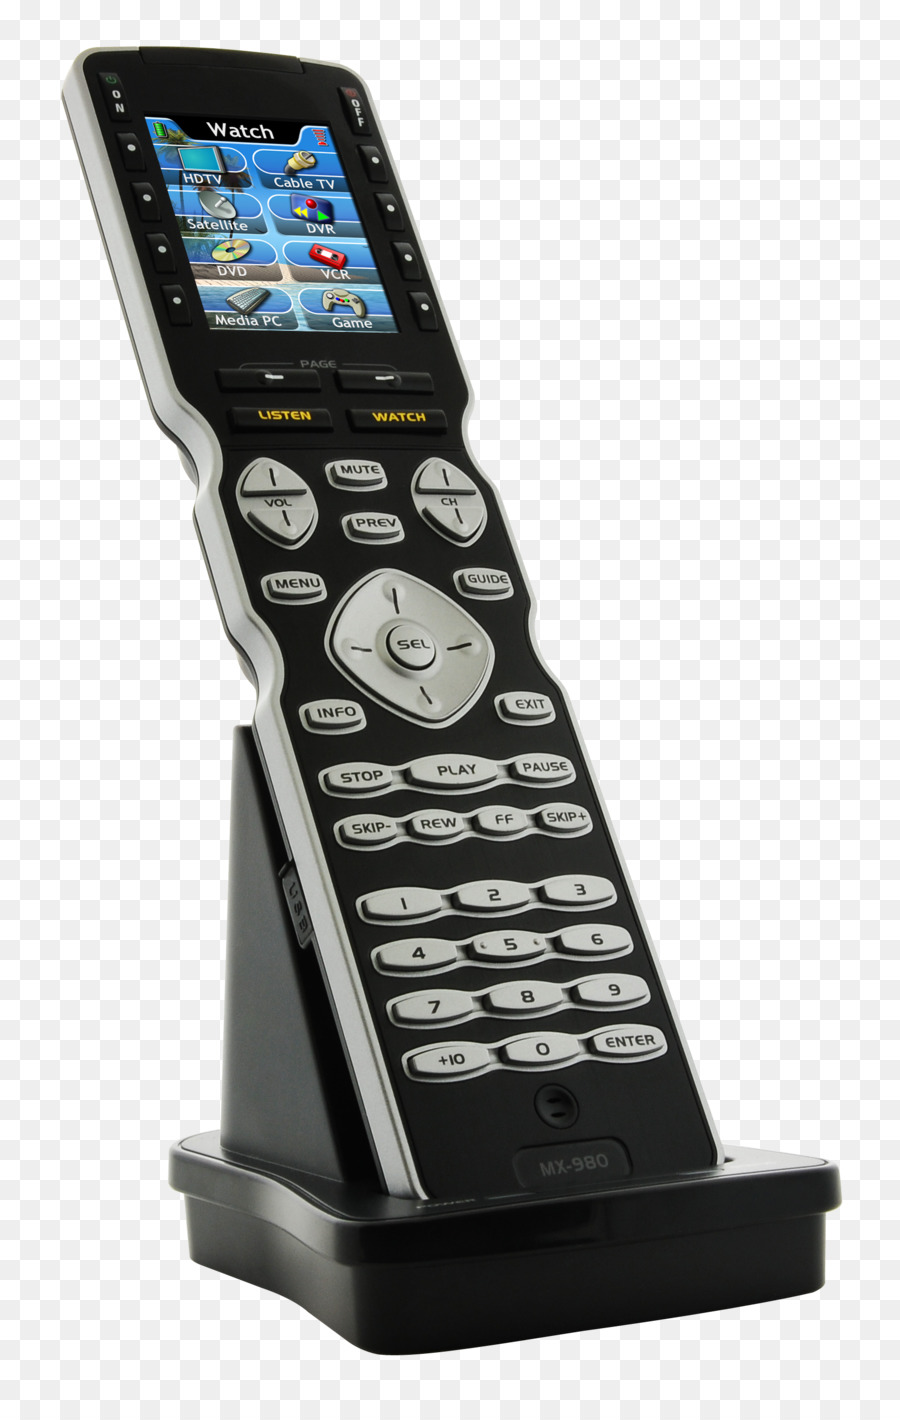 URC (Universal Remote Control) telecomandi telefono di MX-980 255 Dispositivo IR RF Telecomando con LCD a Colori - vale la pena ricordare momenti